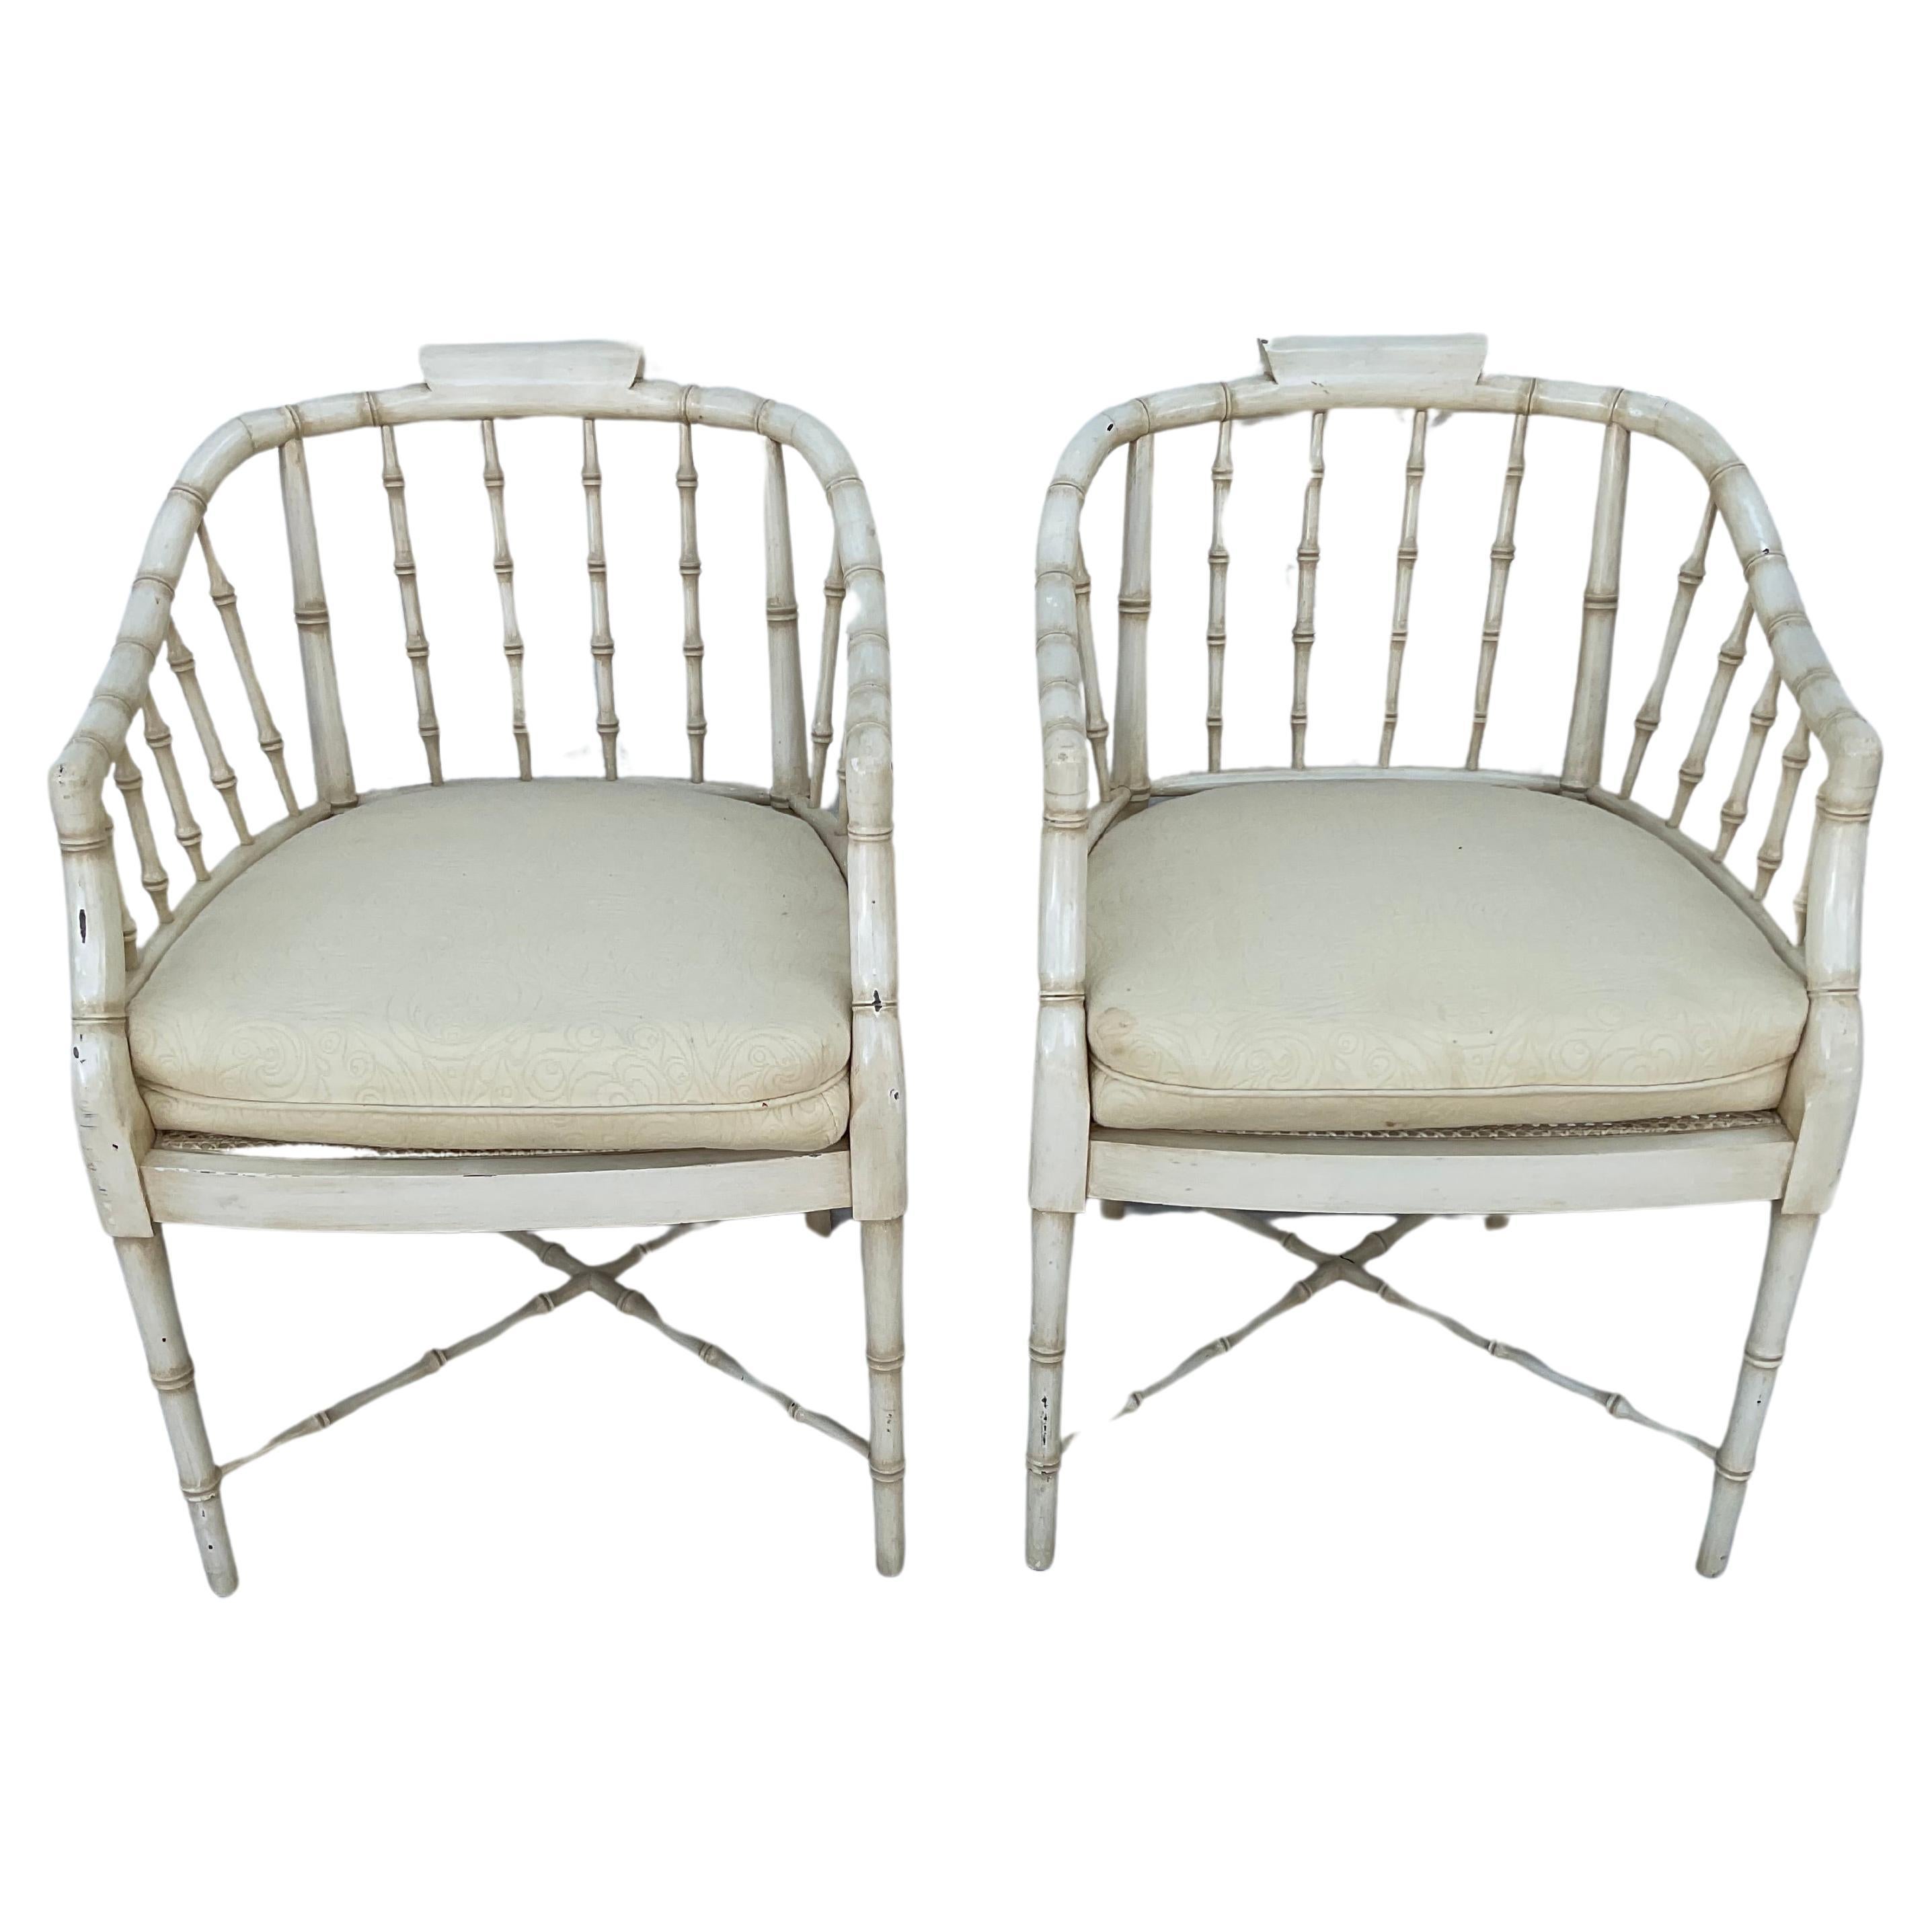 Paire de fauteuils en faux bambou de style Regency, peints en couleur crème. Les dossiers sont en forme de baignoire et les sièges sont en rotin.  Les chaises reposent sur quatre pieds élancés reliés par un châssis en forme de X. Ils sont livrés